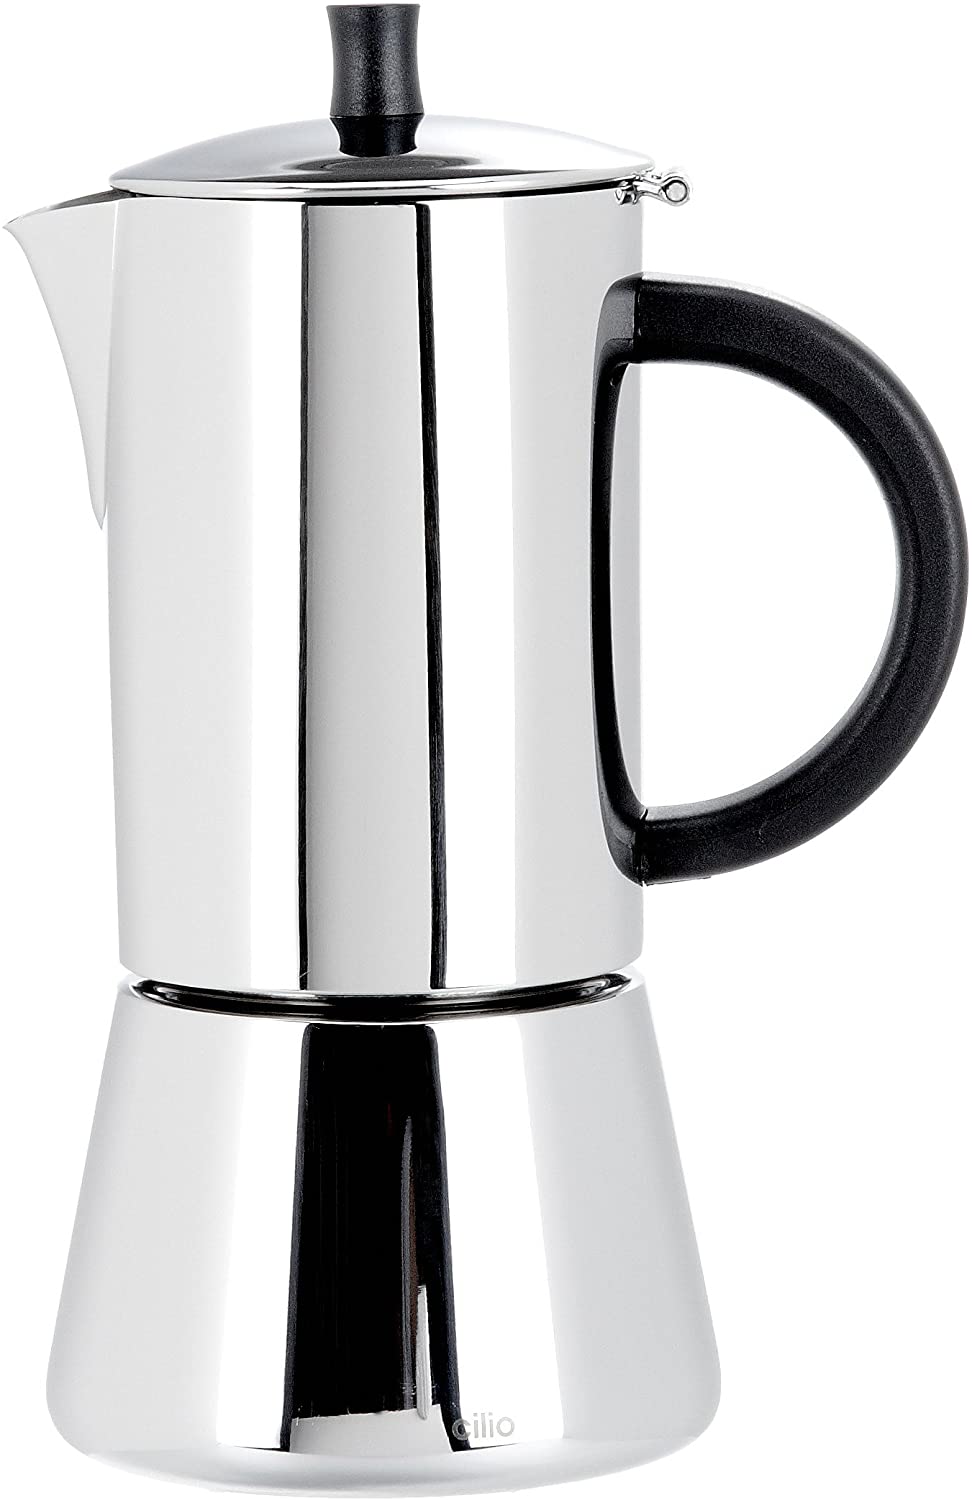 Cilio Espresso Maker 6 Cups